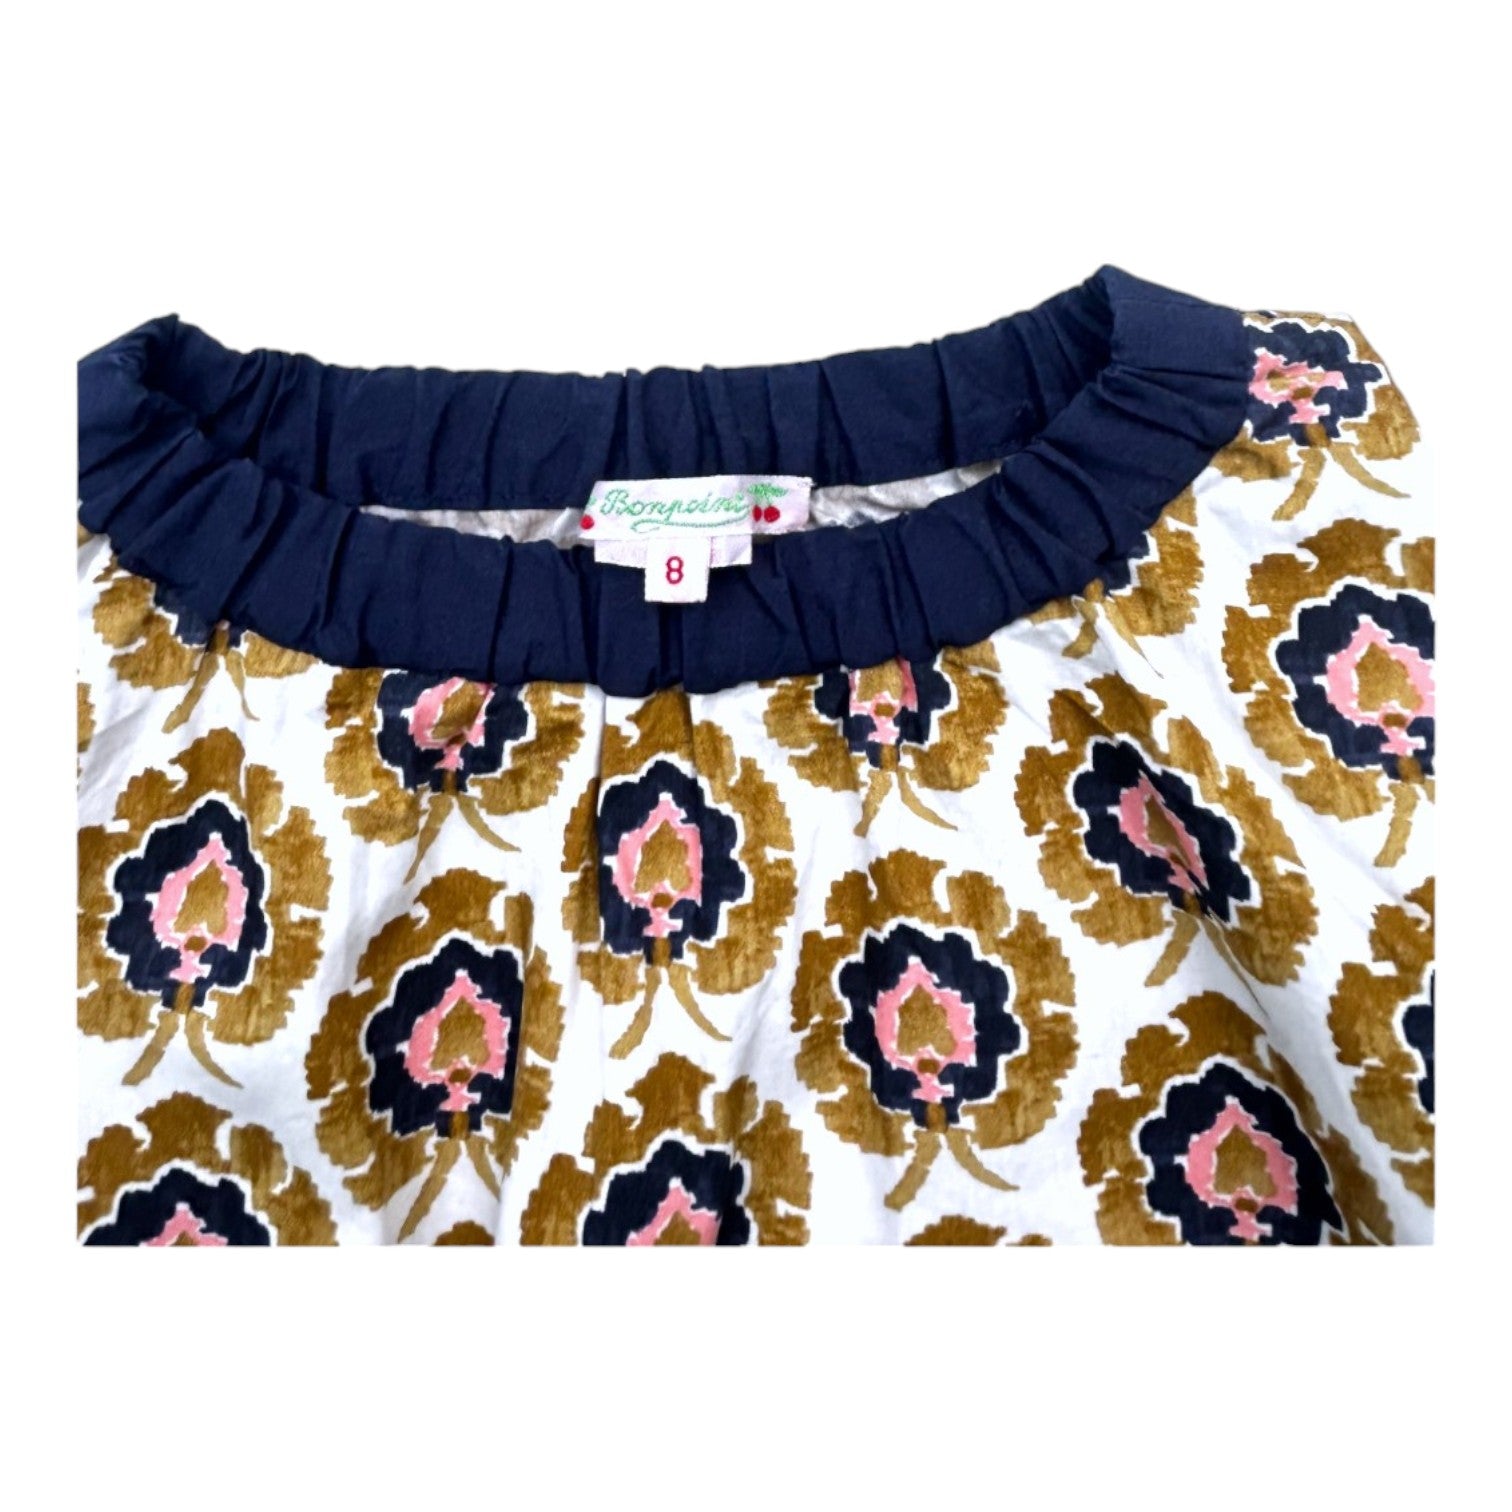 BONPOINT - Robe manches longues à motifs colorés - 8 ans